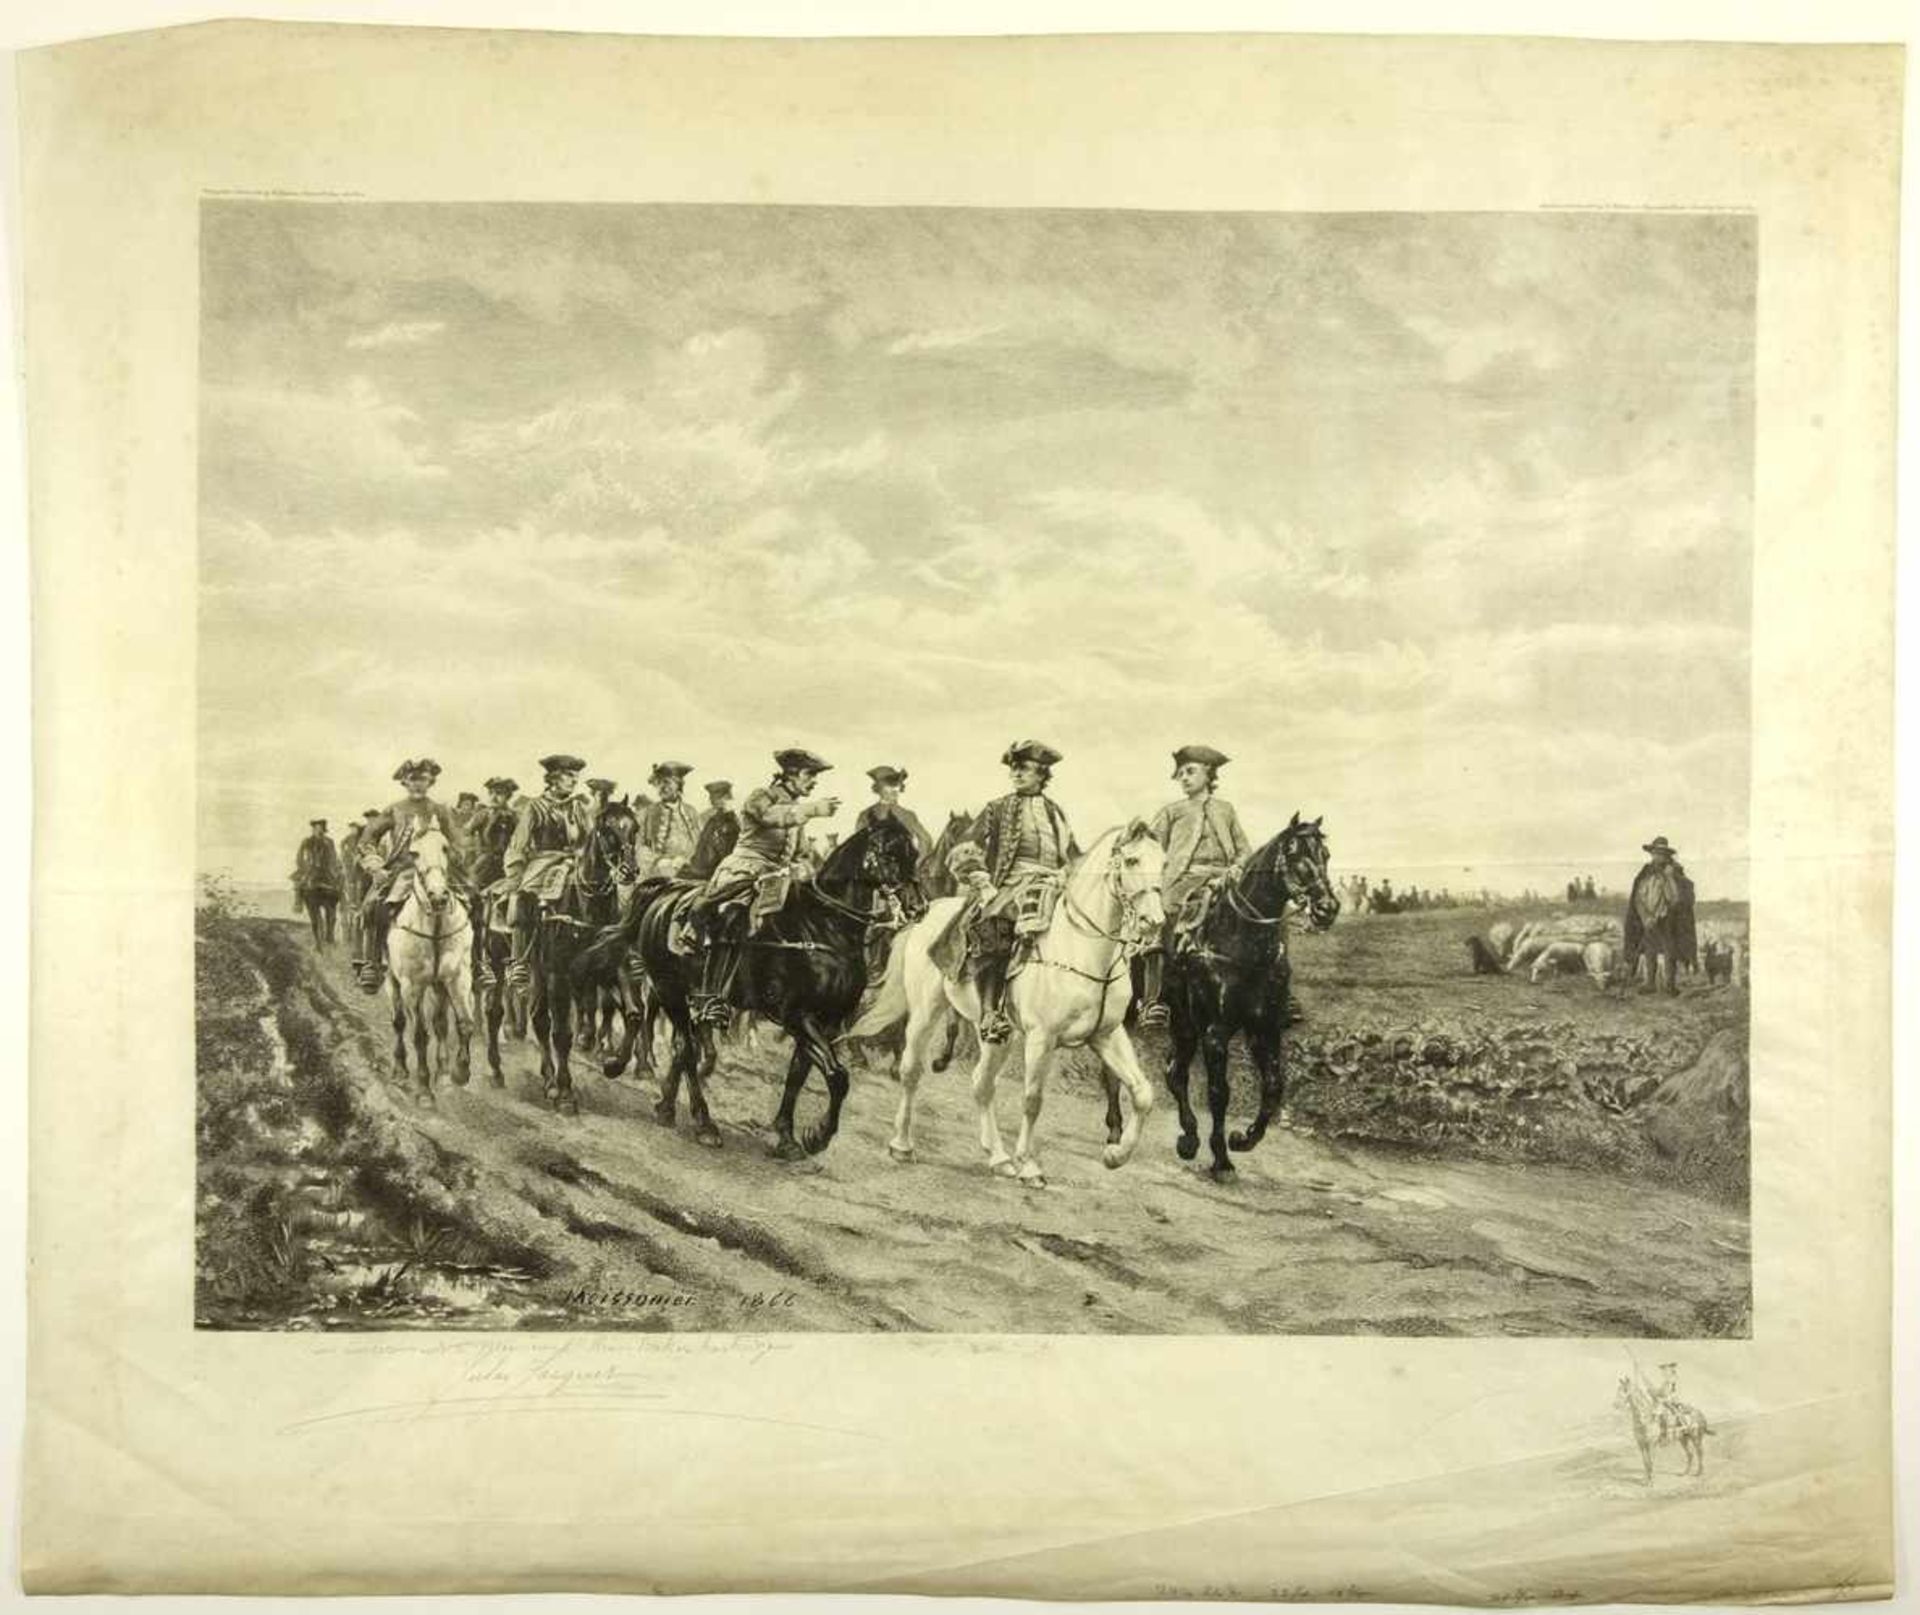 Kupferstich nach Meissonier "Le Maréchal de Saxe (Marschall von Sachsen und seine Truppen)", 1899,